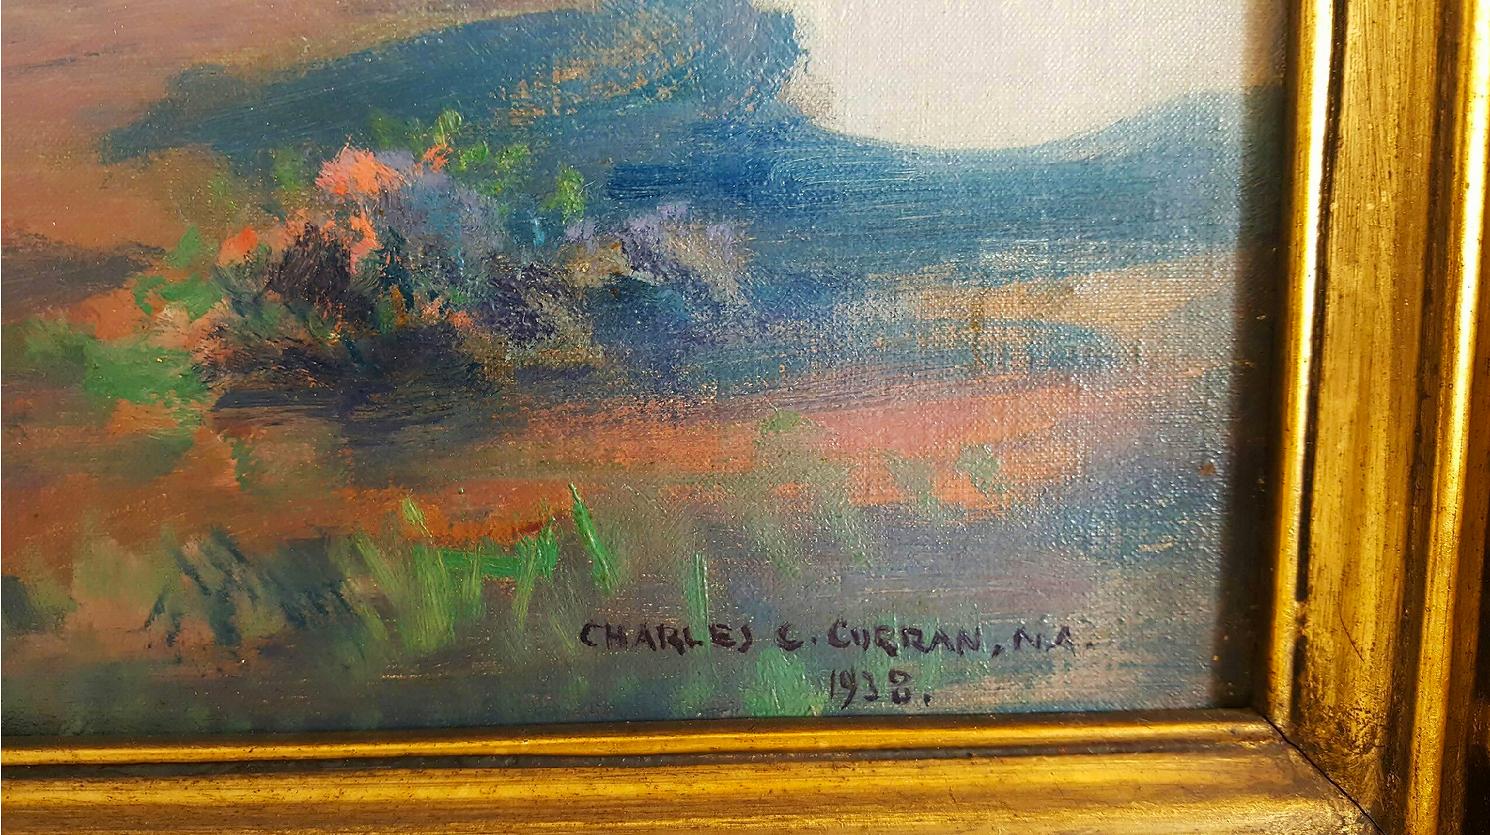 Abend auf dem Berg - Hirsche auf einem Berggipfel (Post-Impressionismus), Painting, von Charles Courtney Curran